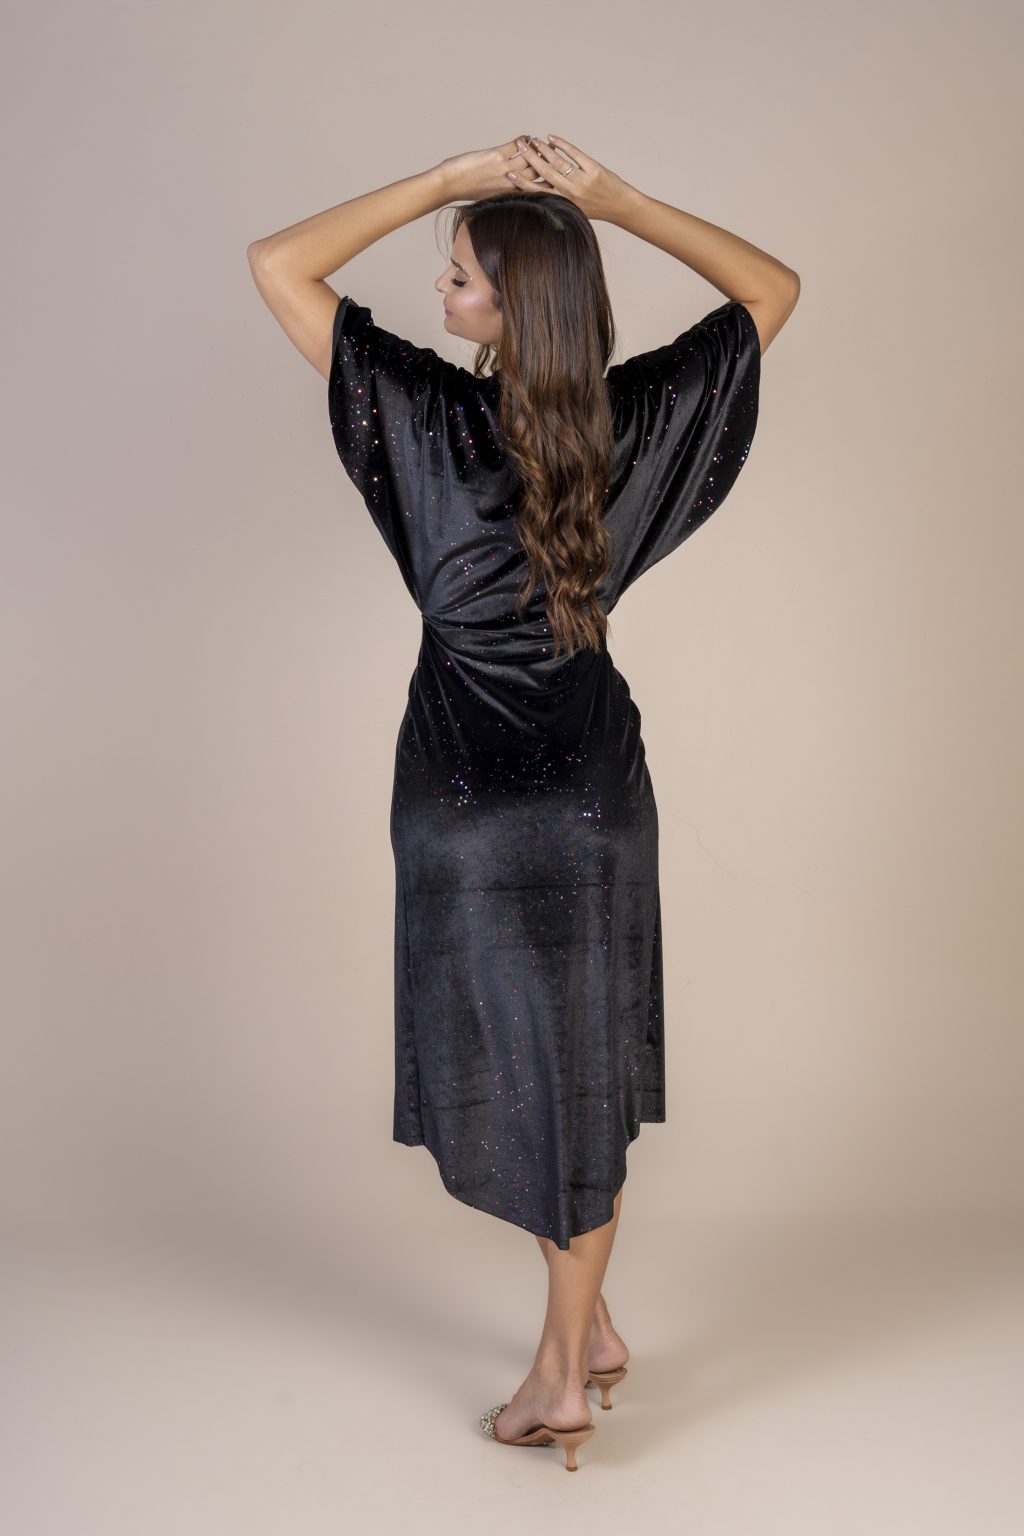 Mulher morena usando um vestido preto de veludo com brilho mídi manga curta com elástico na cintura conforto elegância praticidade edição limitada exclusiva maria sanz kimono quimono